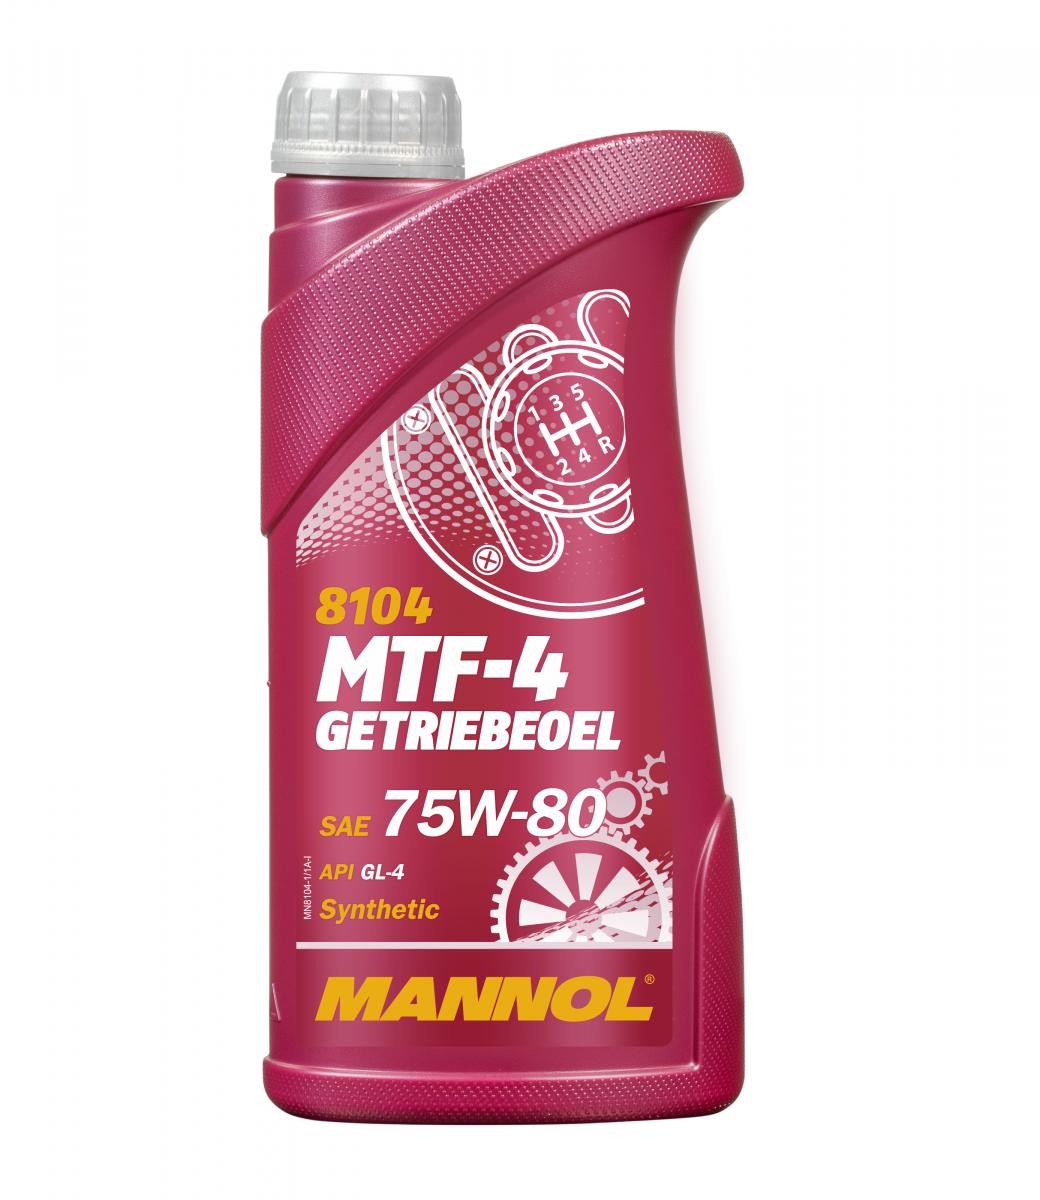 MANNOL MTF-4, GL-4 MN8104-1 ZNEN Getriebeöl Motorrad zum günstigen Preis